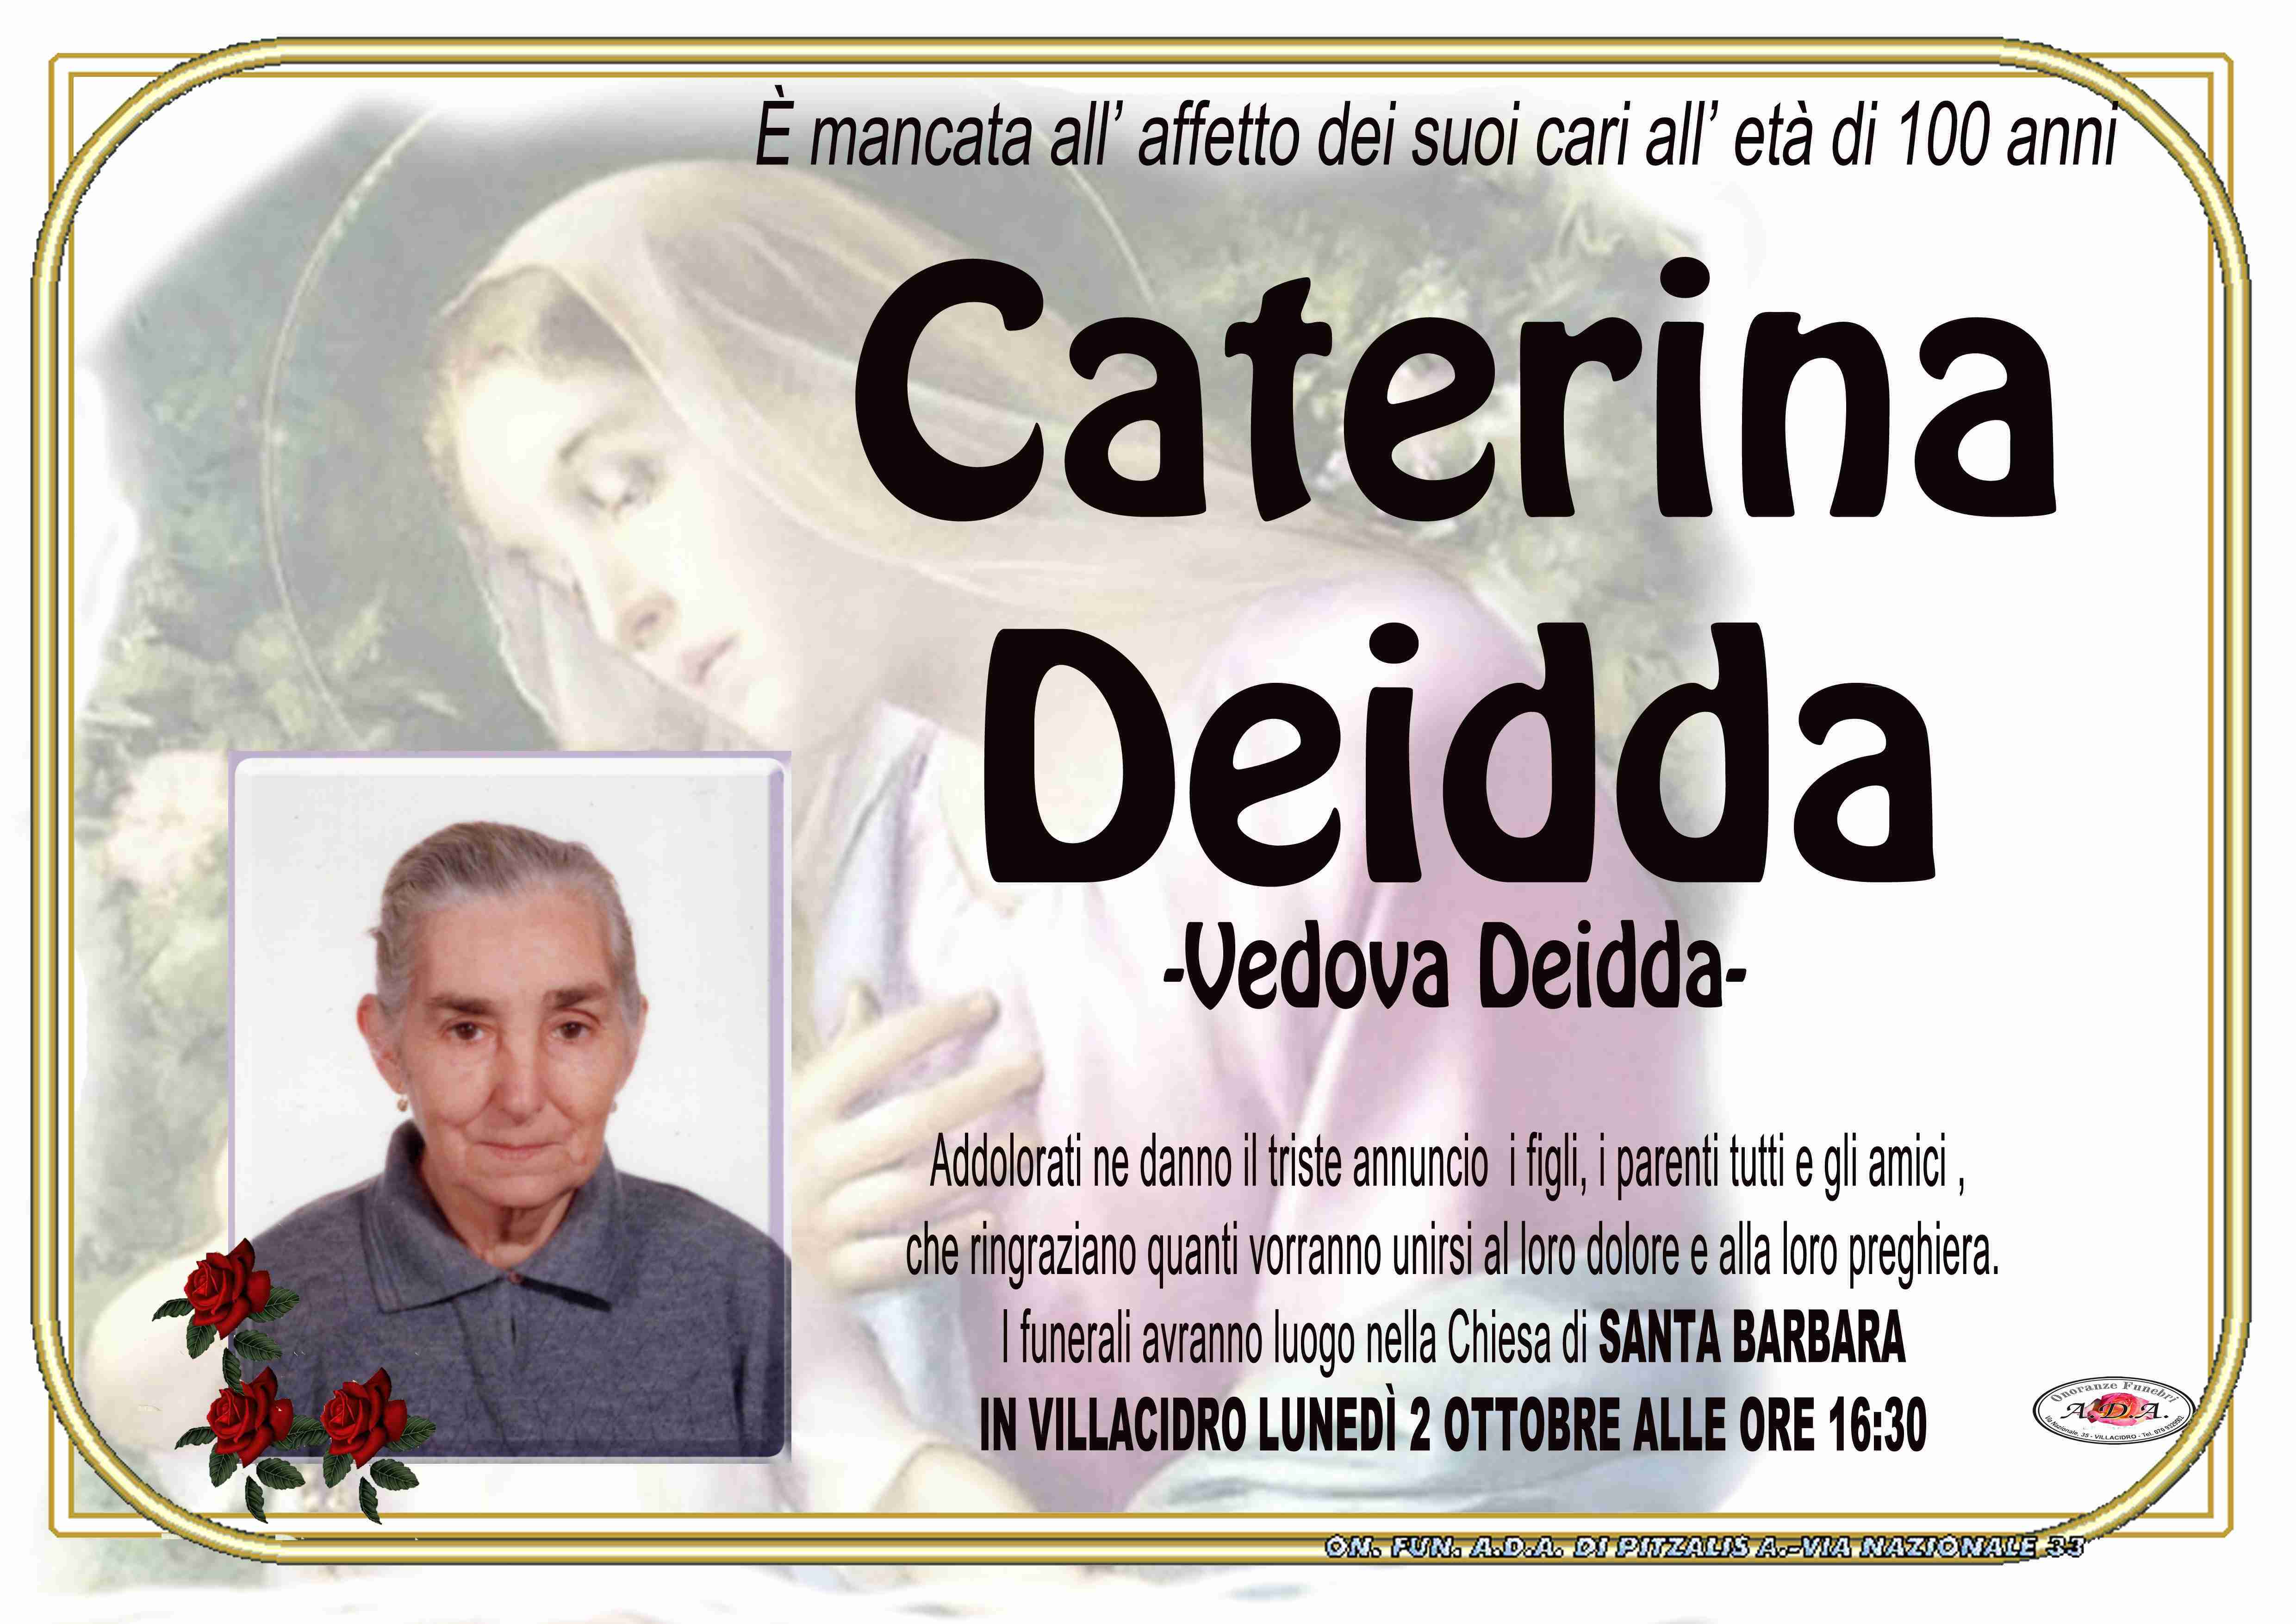 Caterina Deidda